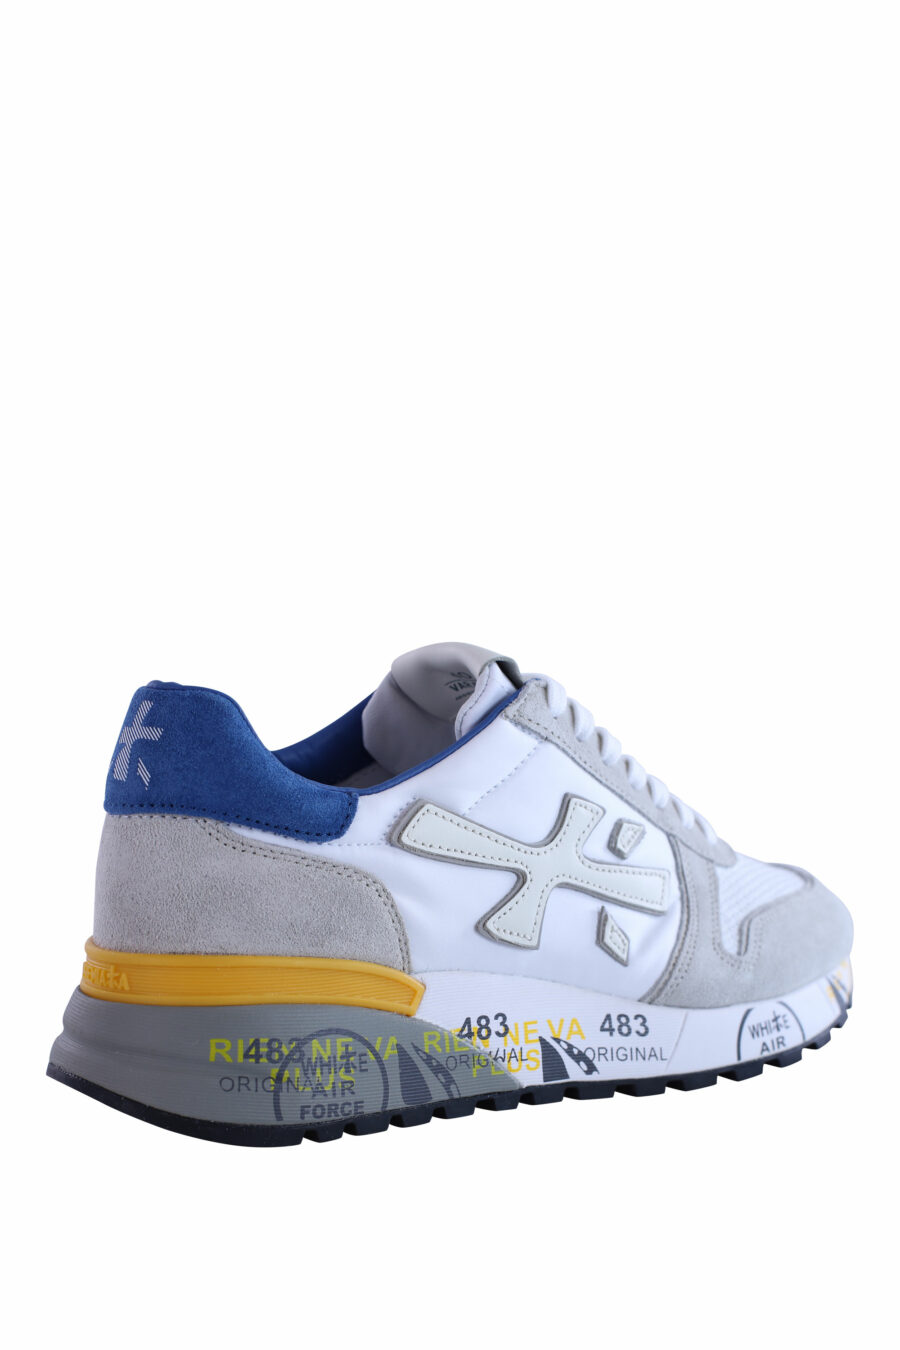 Zapatillas blancas con gris "mick 6168" - IMG 3001